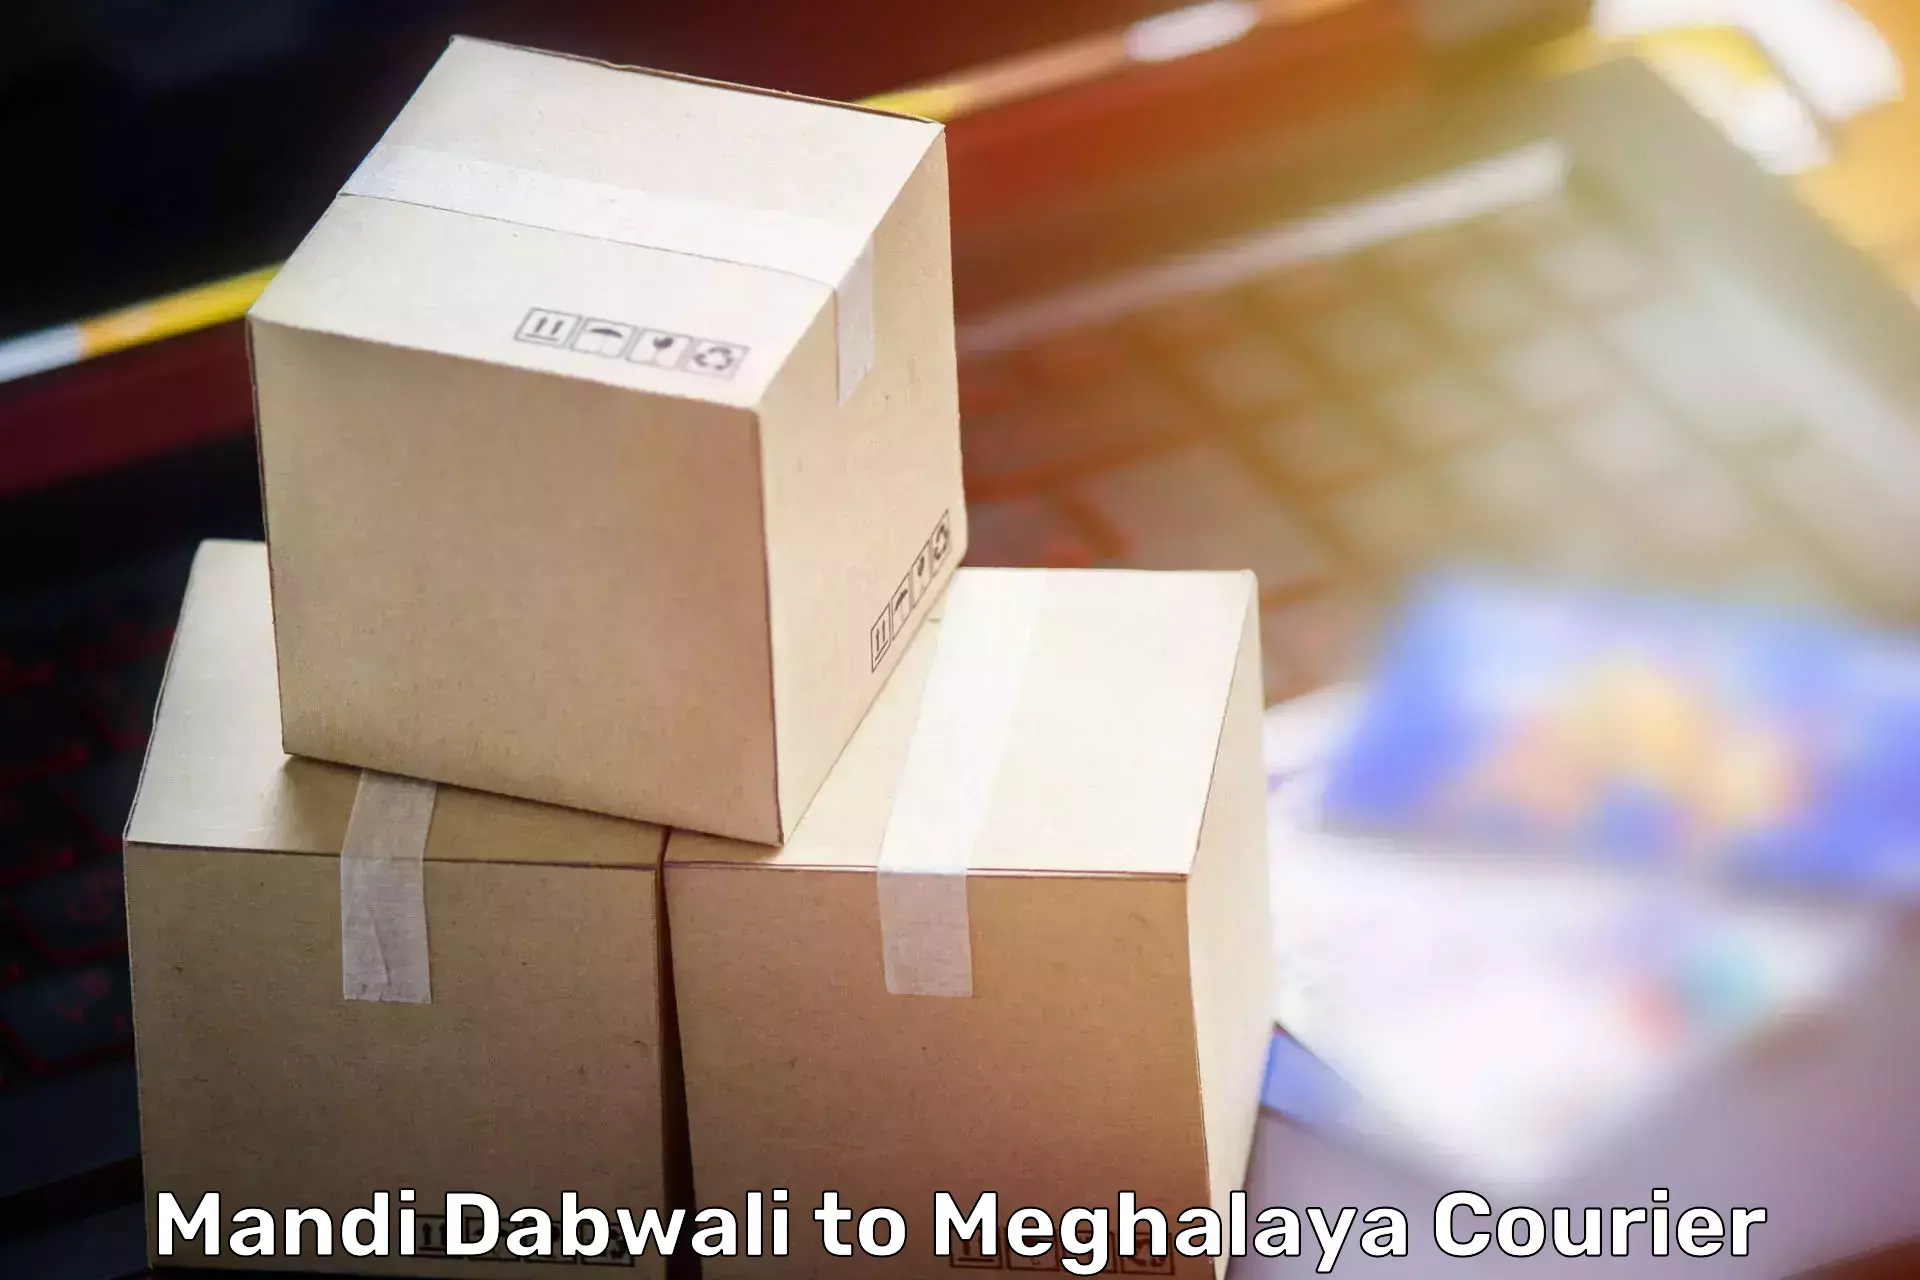 Furniture transport and logistics Mandi Dabwali to Meghalaya